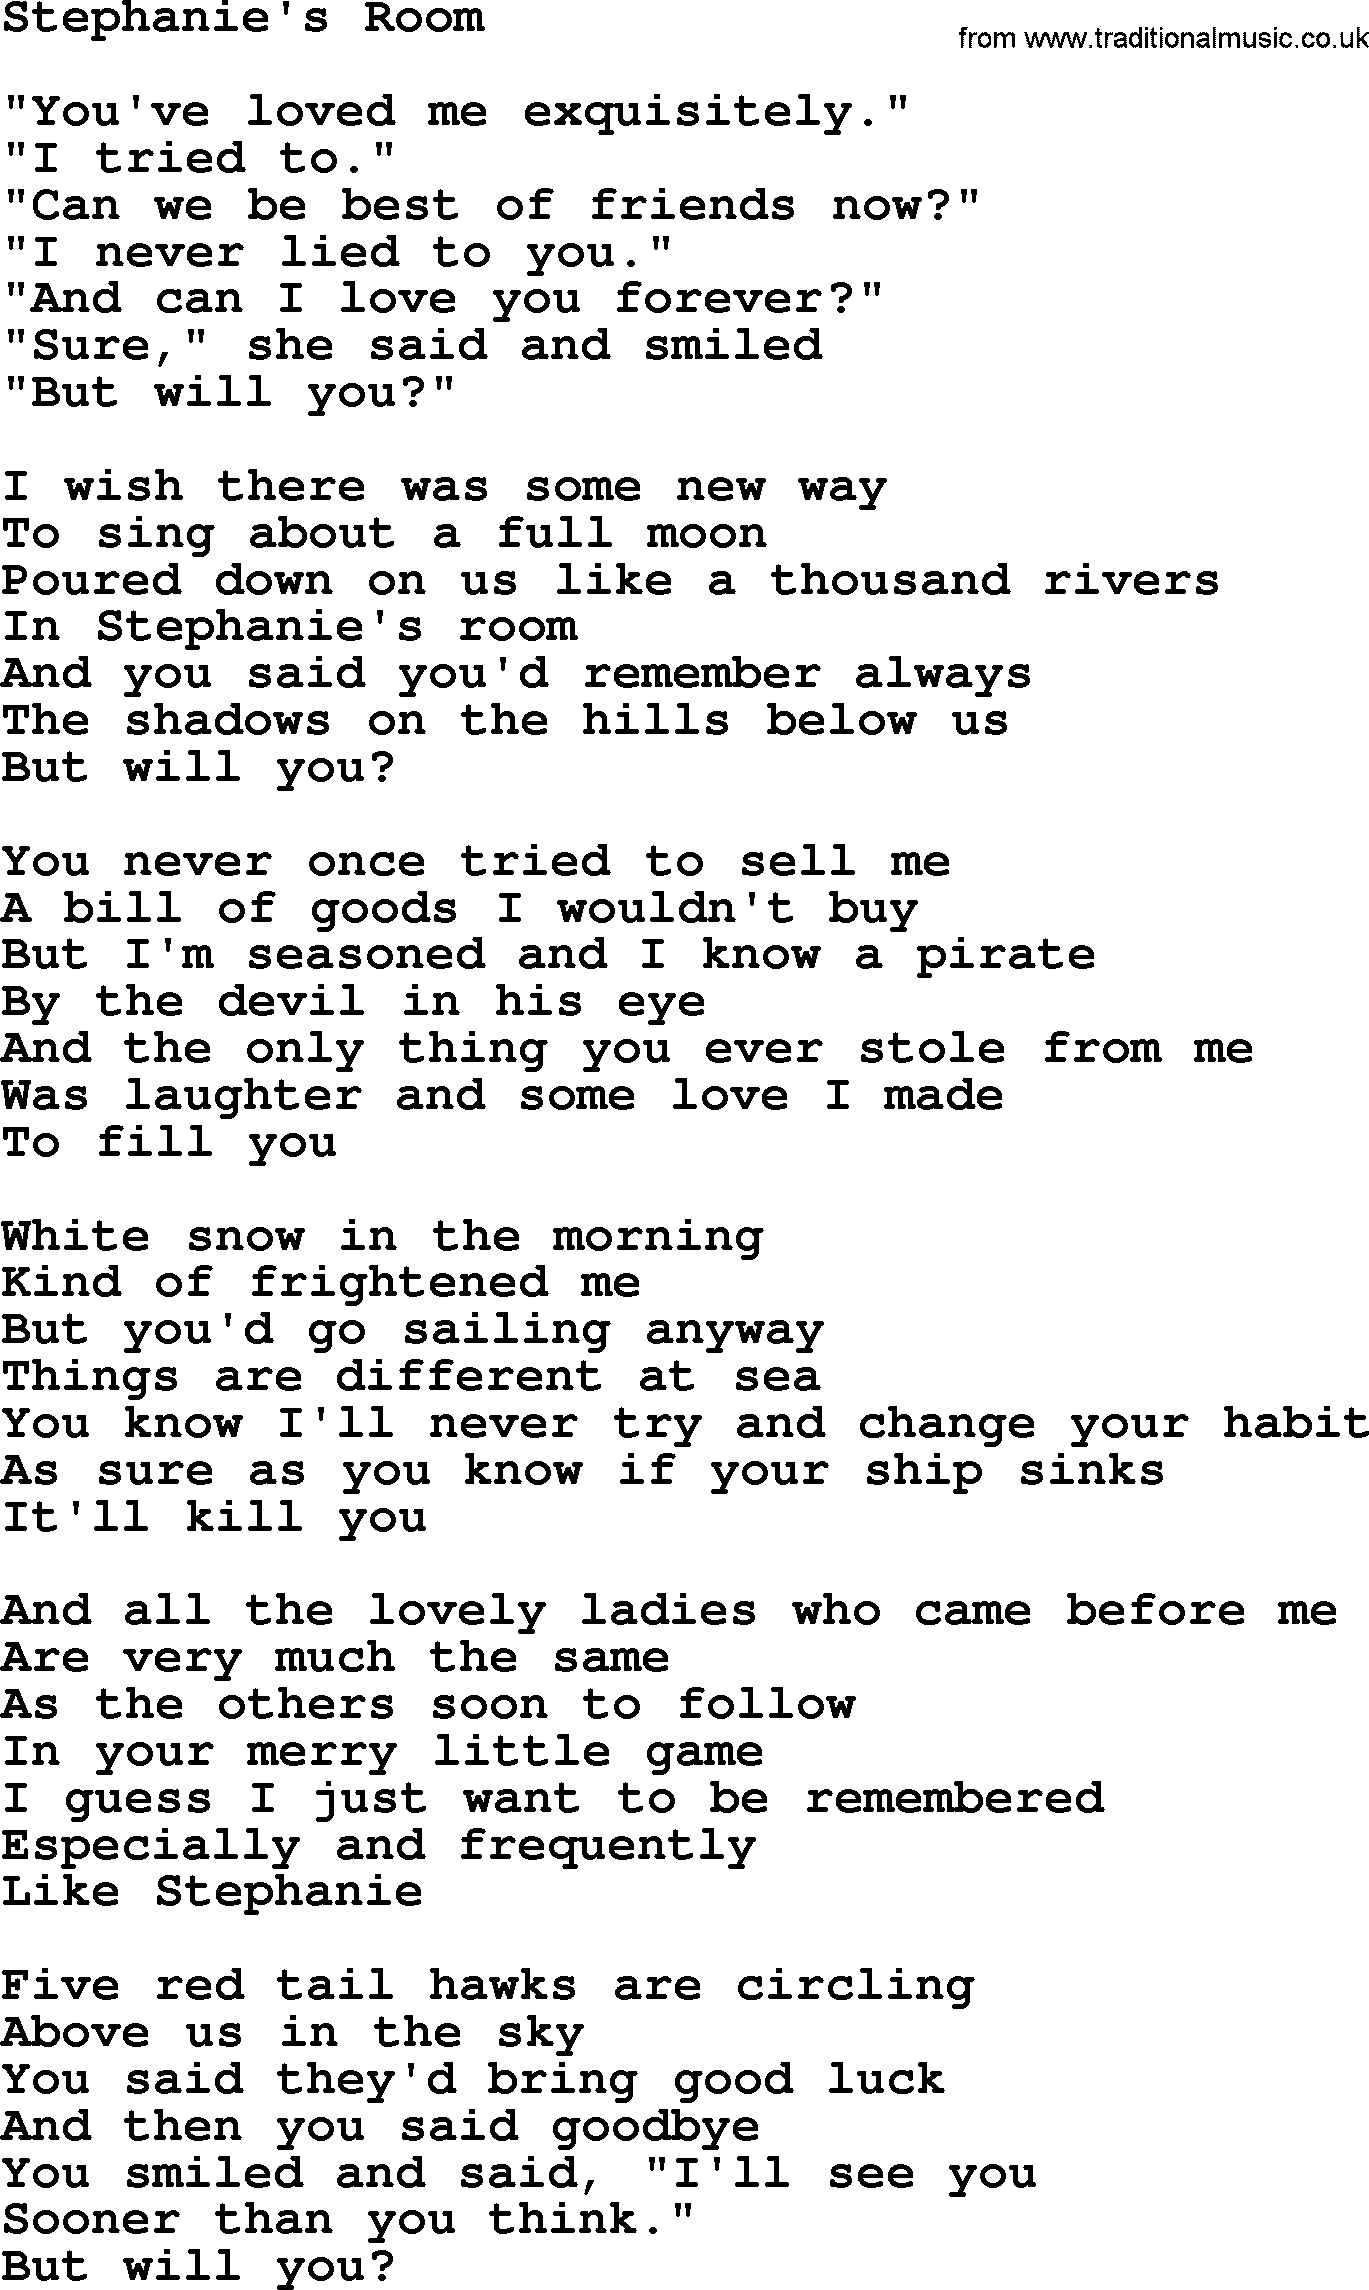 Joan Baez song Stephanie's Room, lyrics